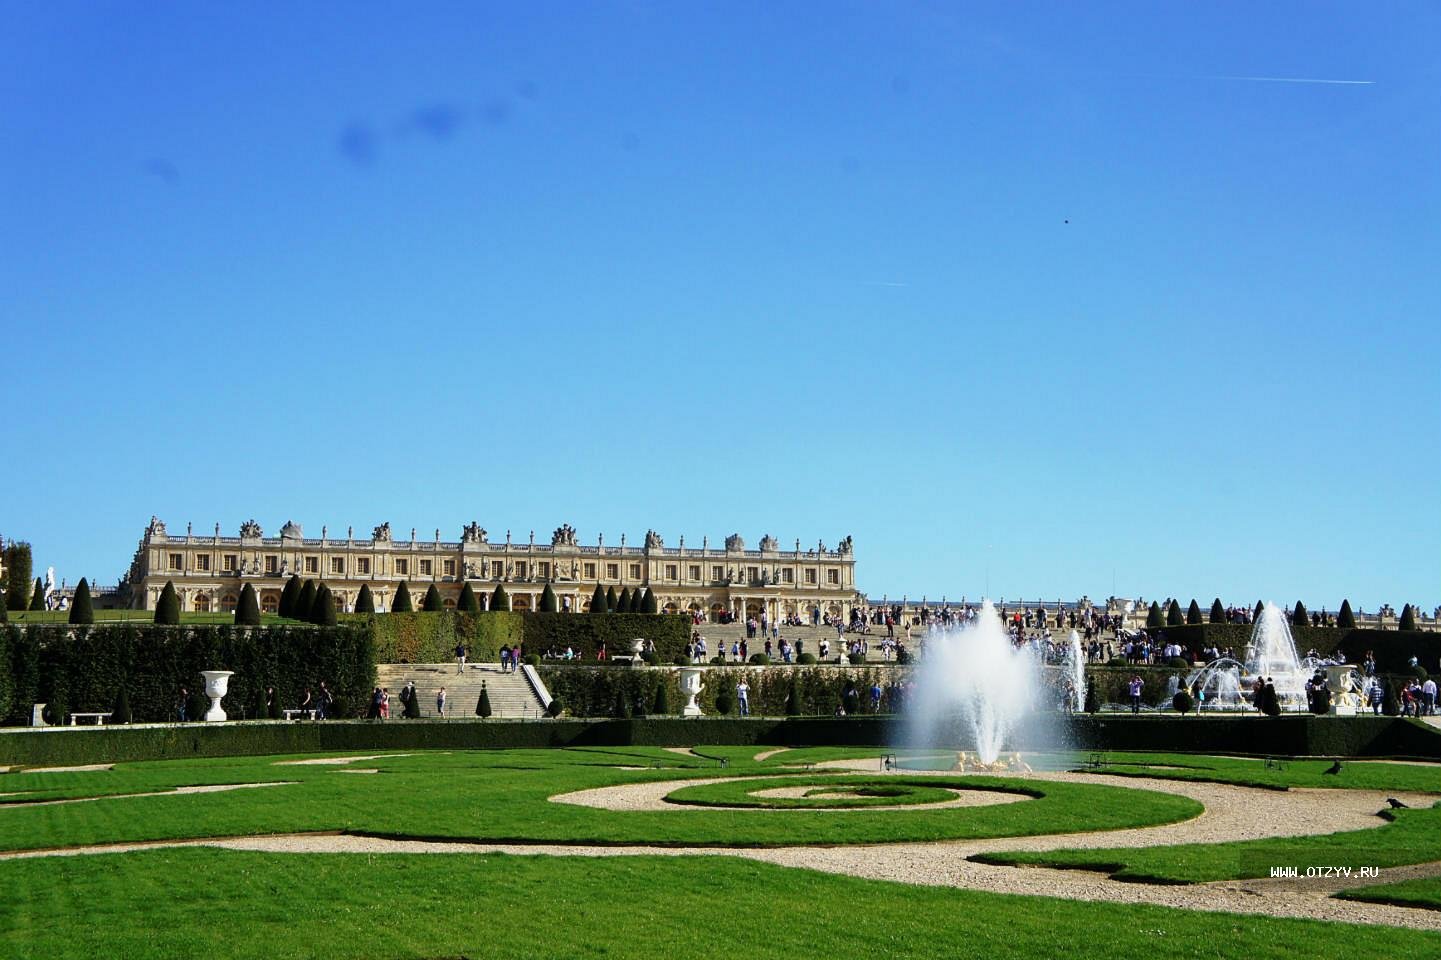 Про версаль. Версальский дворцово-парковый комплекс, Франция. Версальский дворец, Версаль дворец Версаля. Дворец и парк в Версале Франция. Королевская резиденция Версаль.